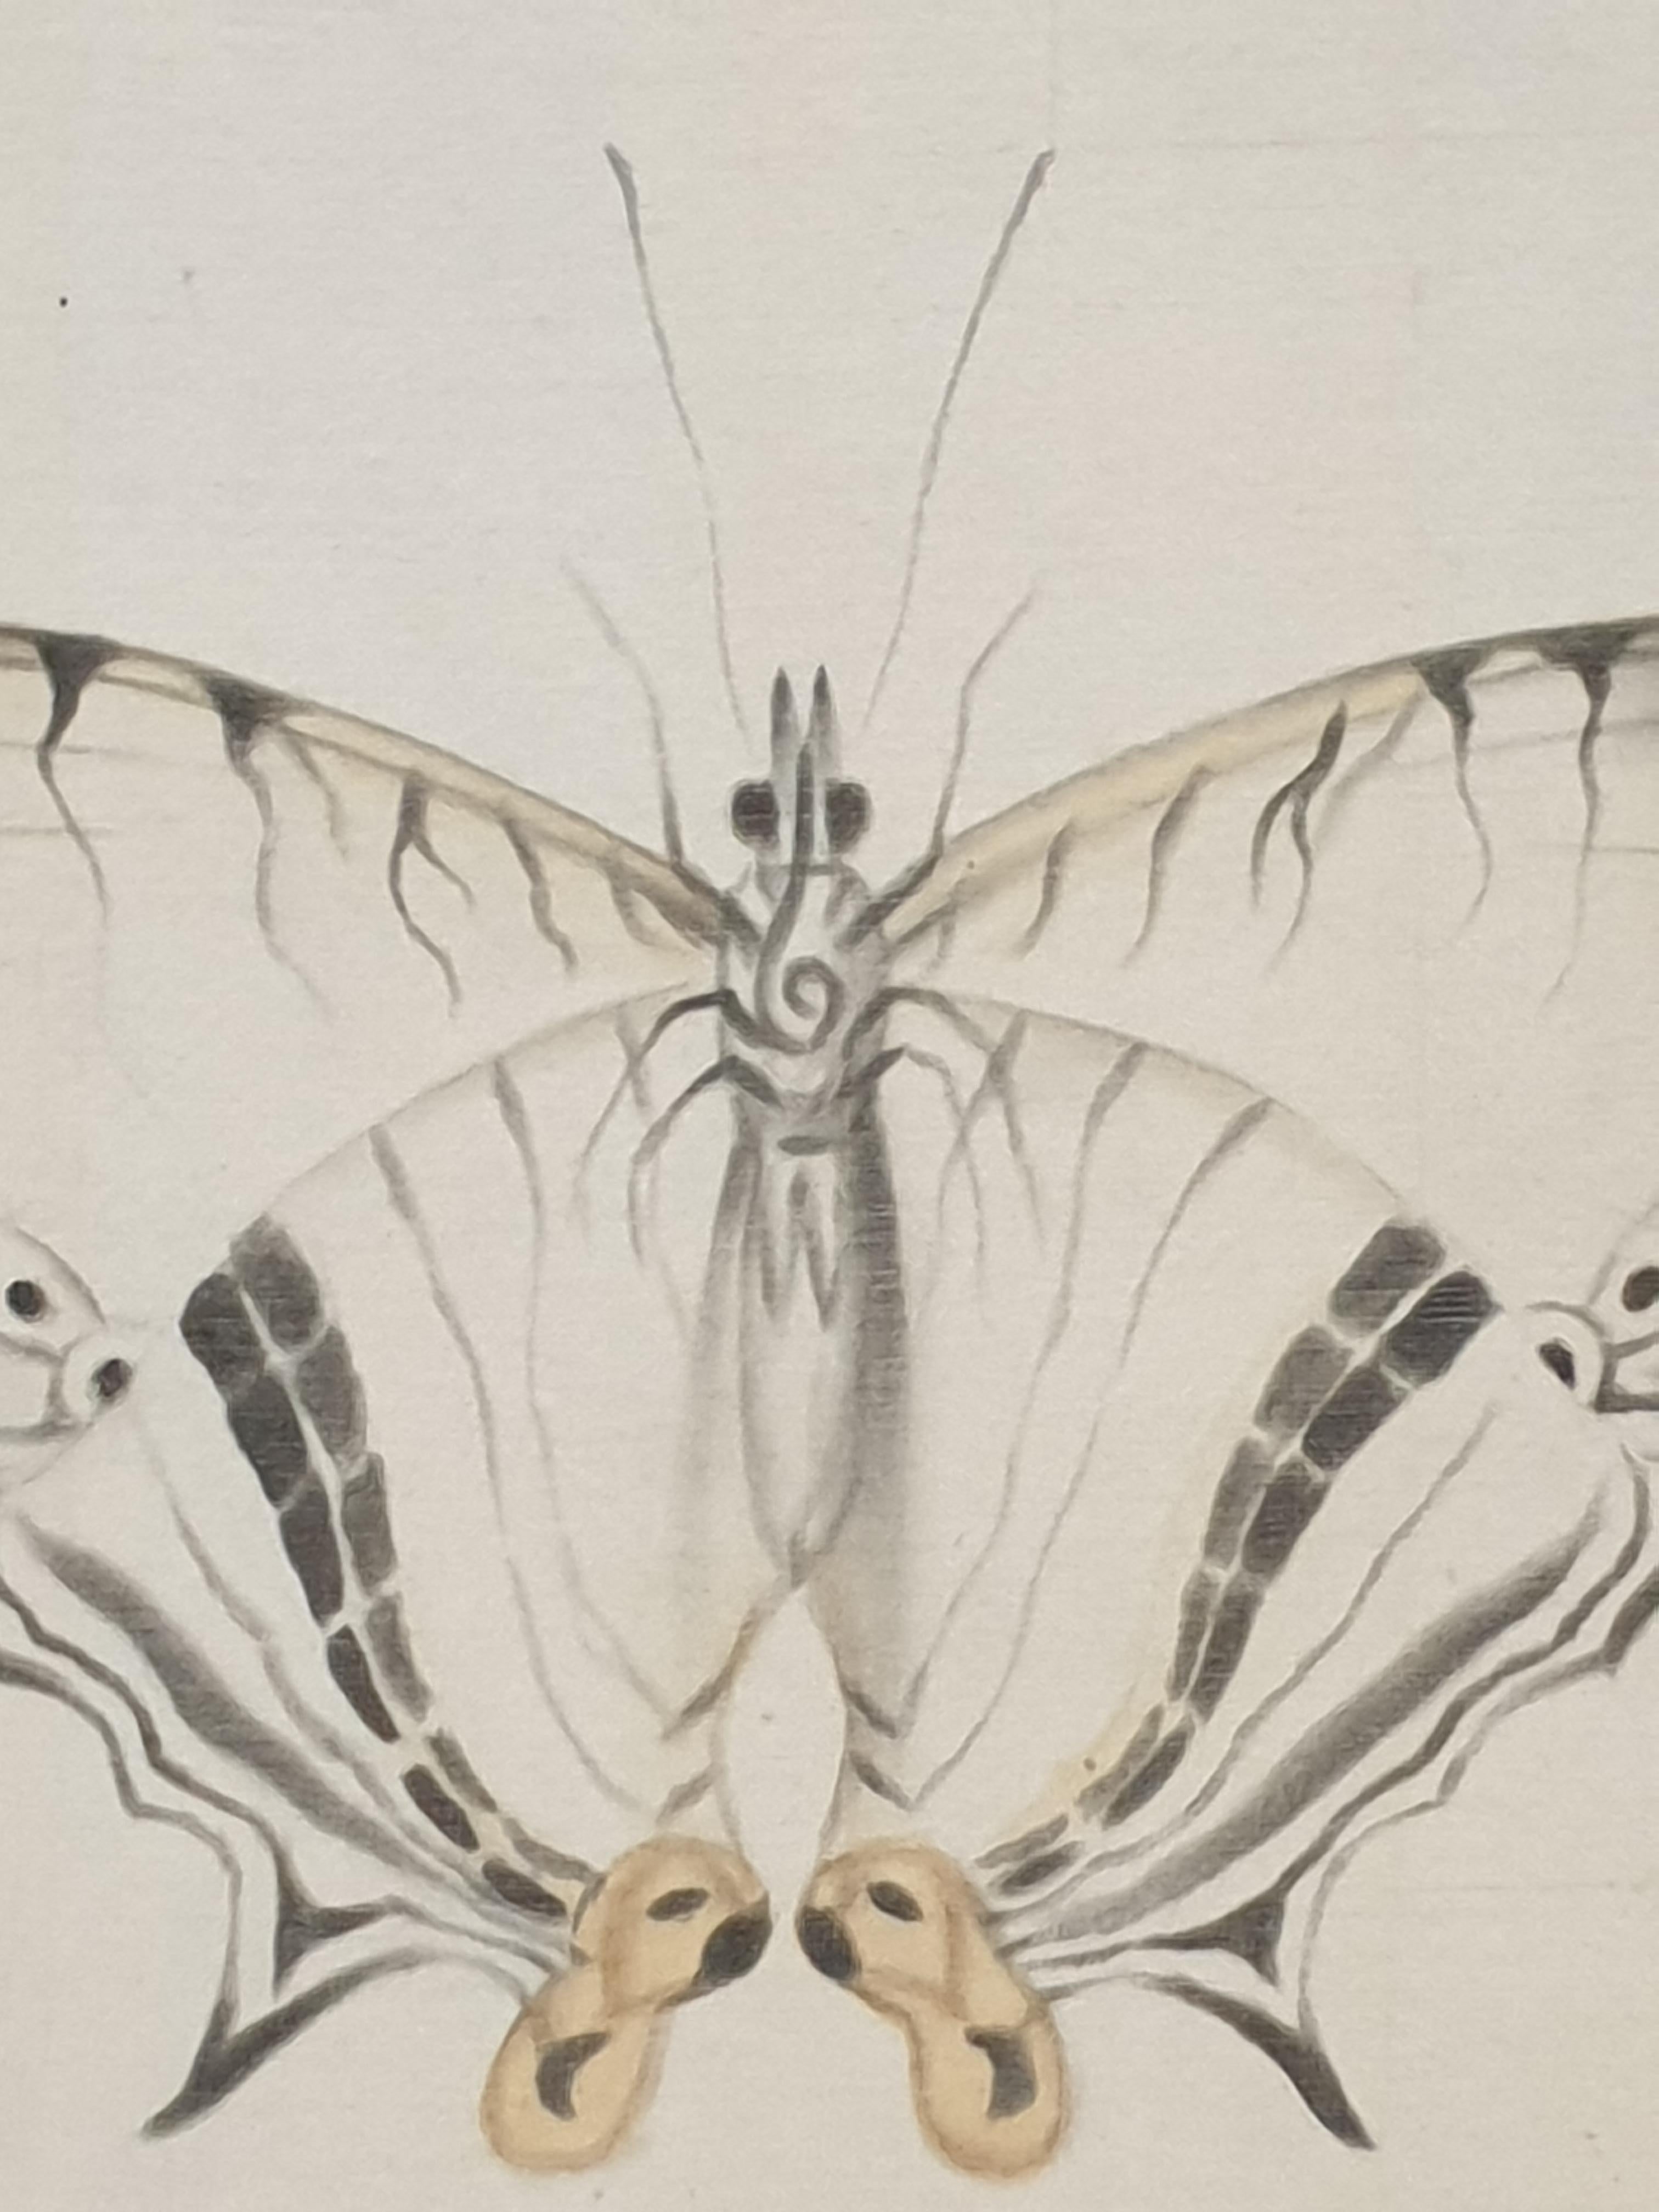 Eines von vier Aquarellen von Schmetterlingen auf Seide, aufgetragen auf handgeschöpftem Papier, mit handgeschnittenen Rändern, von der französischen Künstlerin La Roche Laffitte. Signiert unten rechts. (Die anderen 3 Artikel sind separat